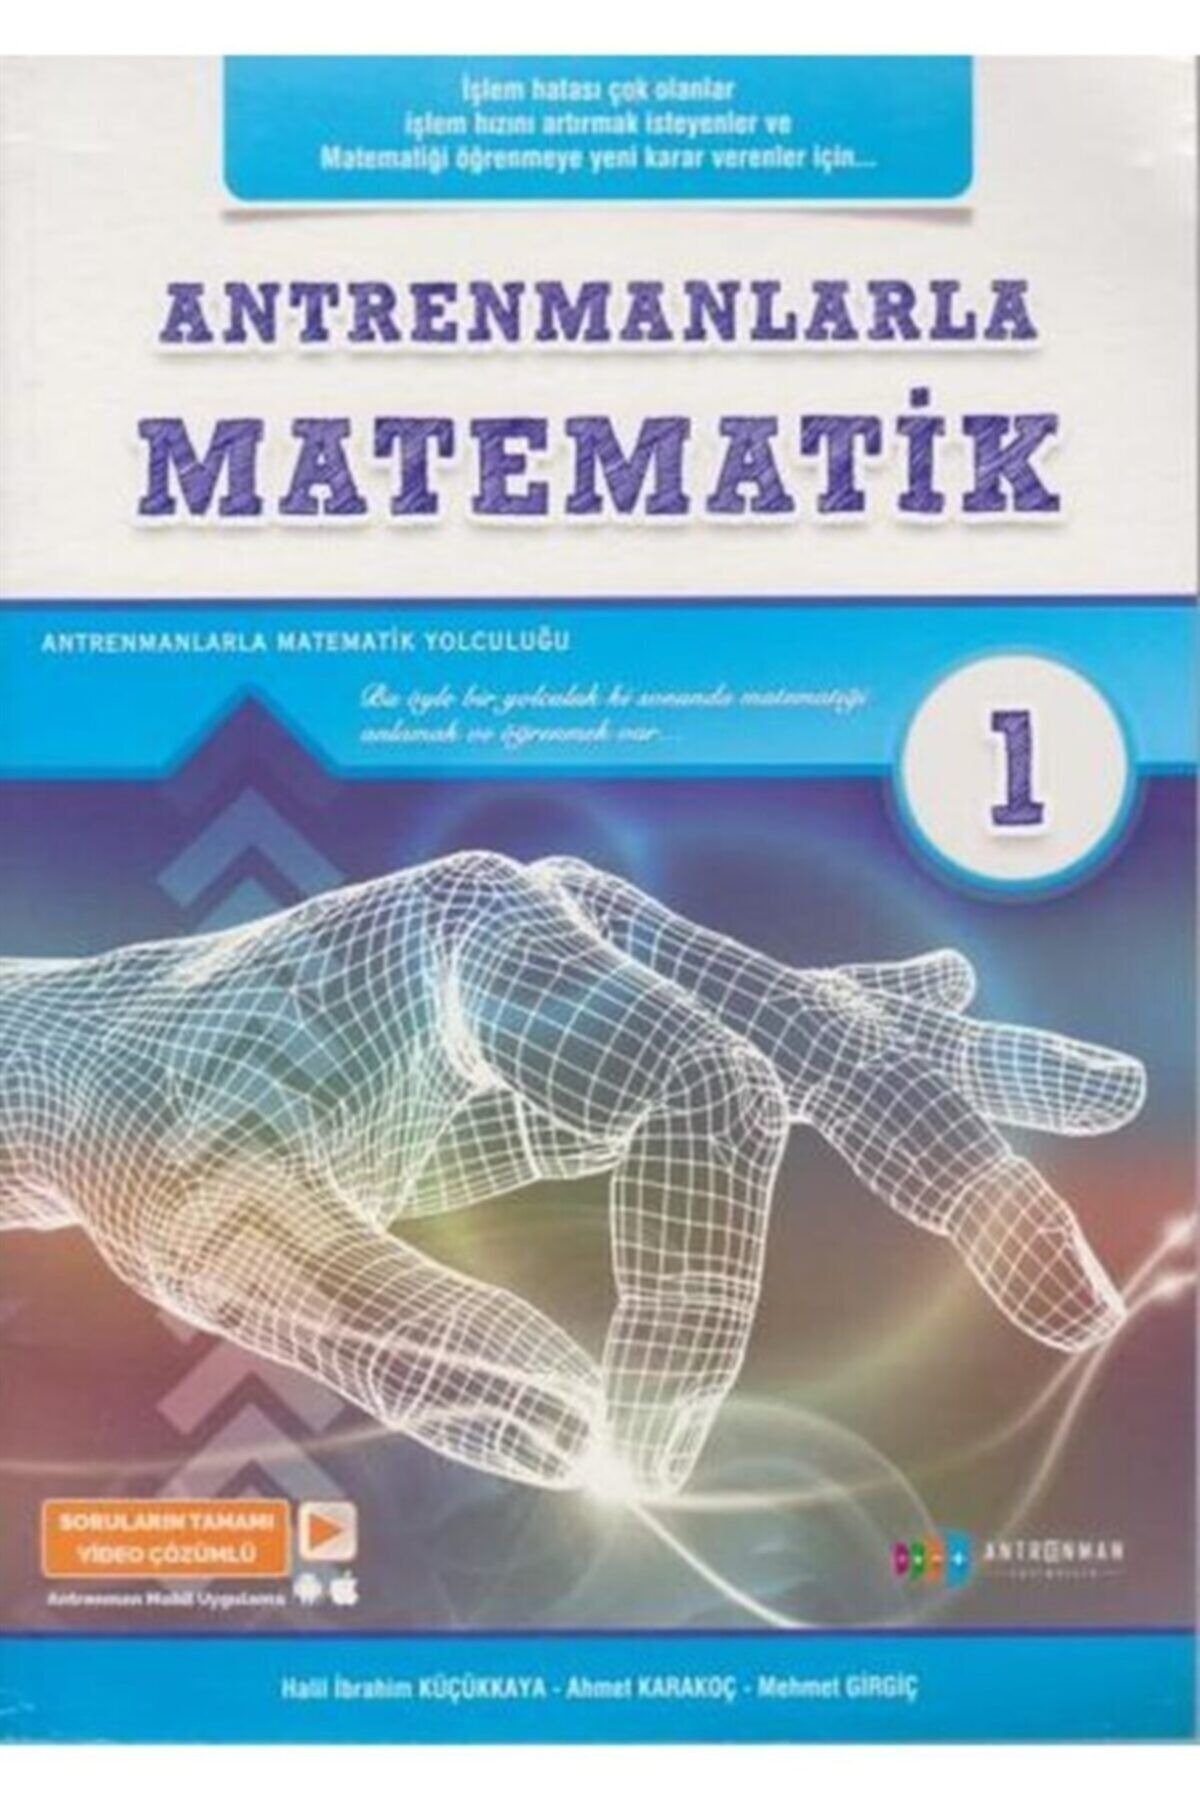 Antrenman Yayınları Antremanlarla Matematik 1.kitap